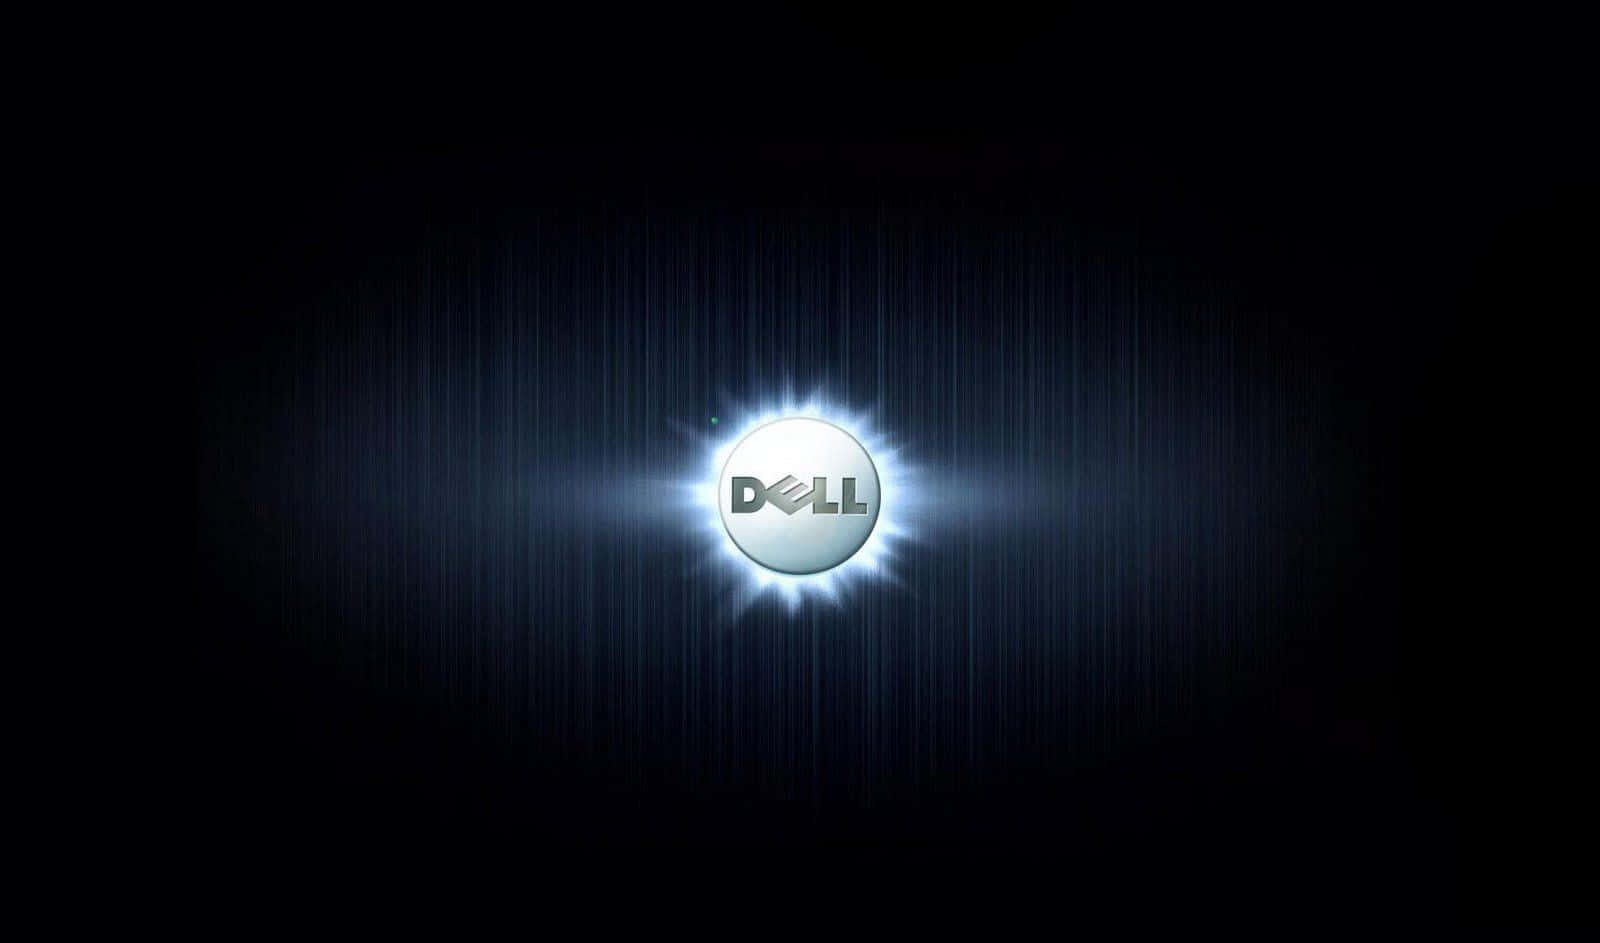 Unternehmenslösungenmit Dell-technologie